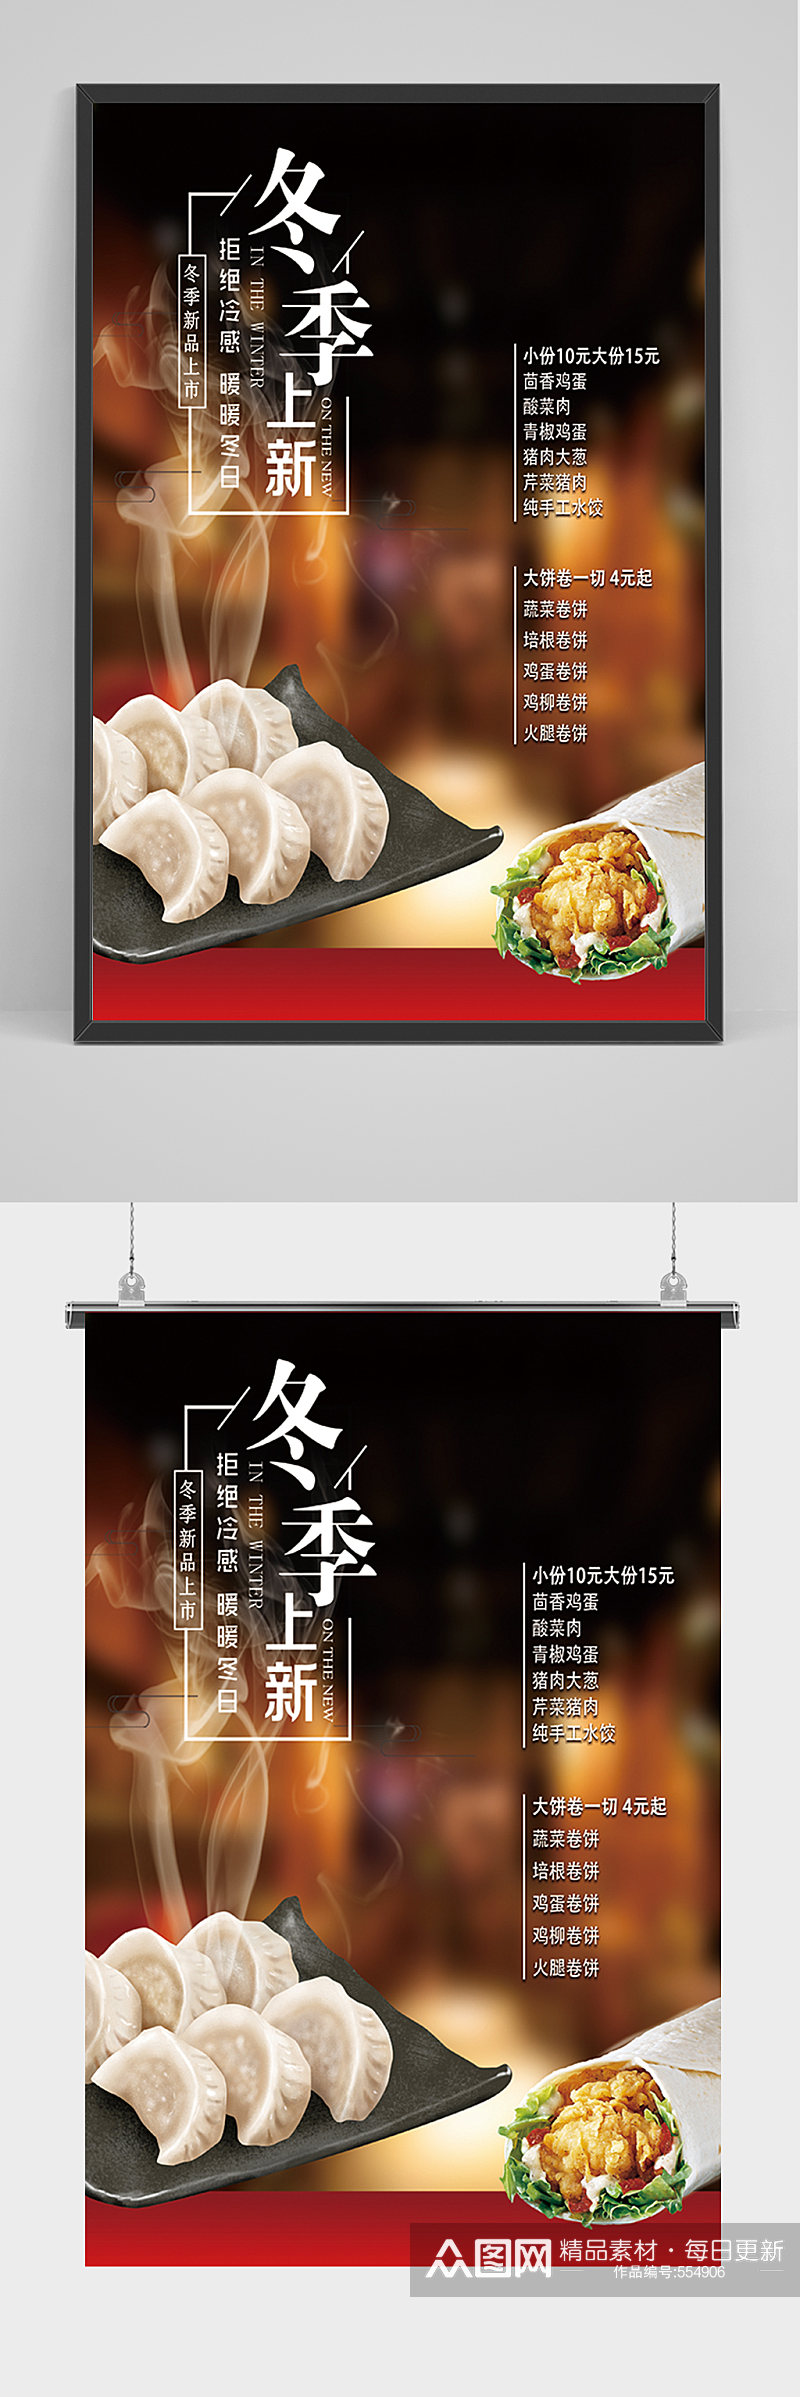 冬季饺子菜单海报素材